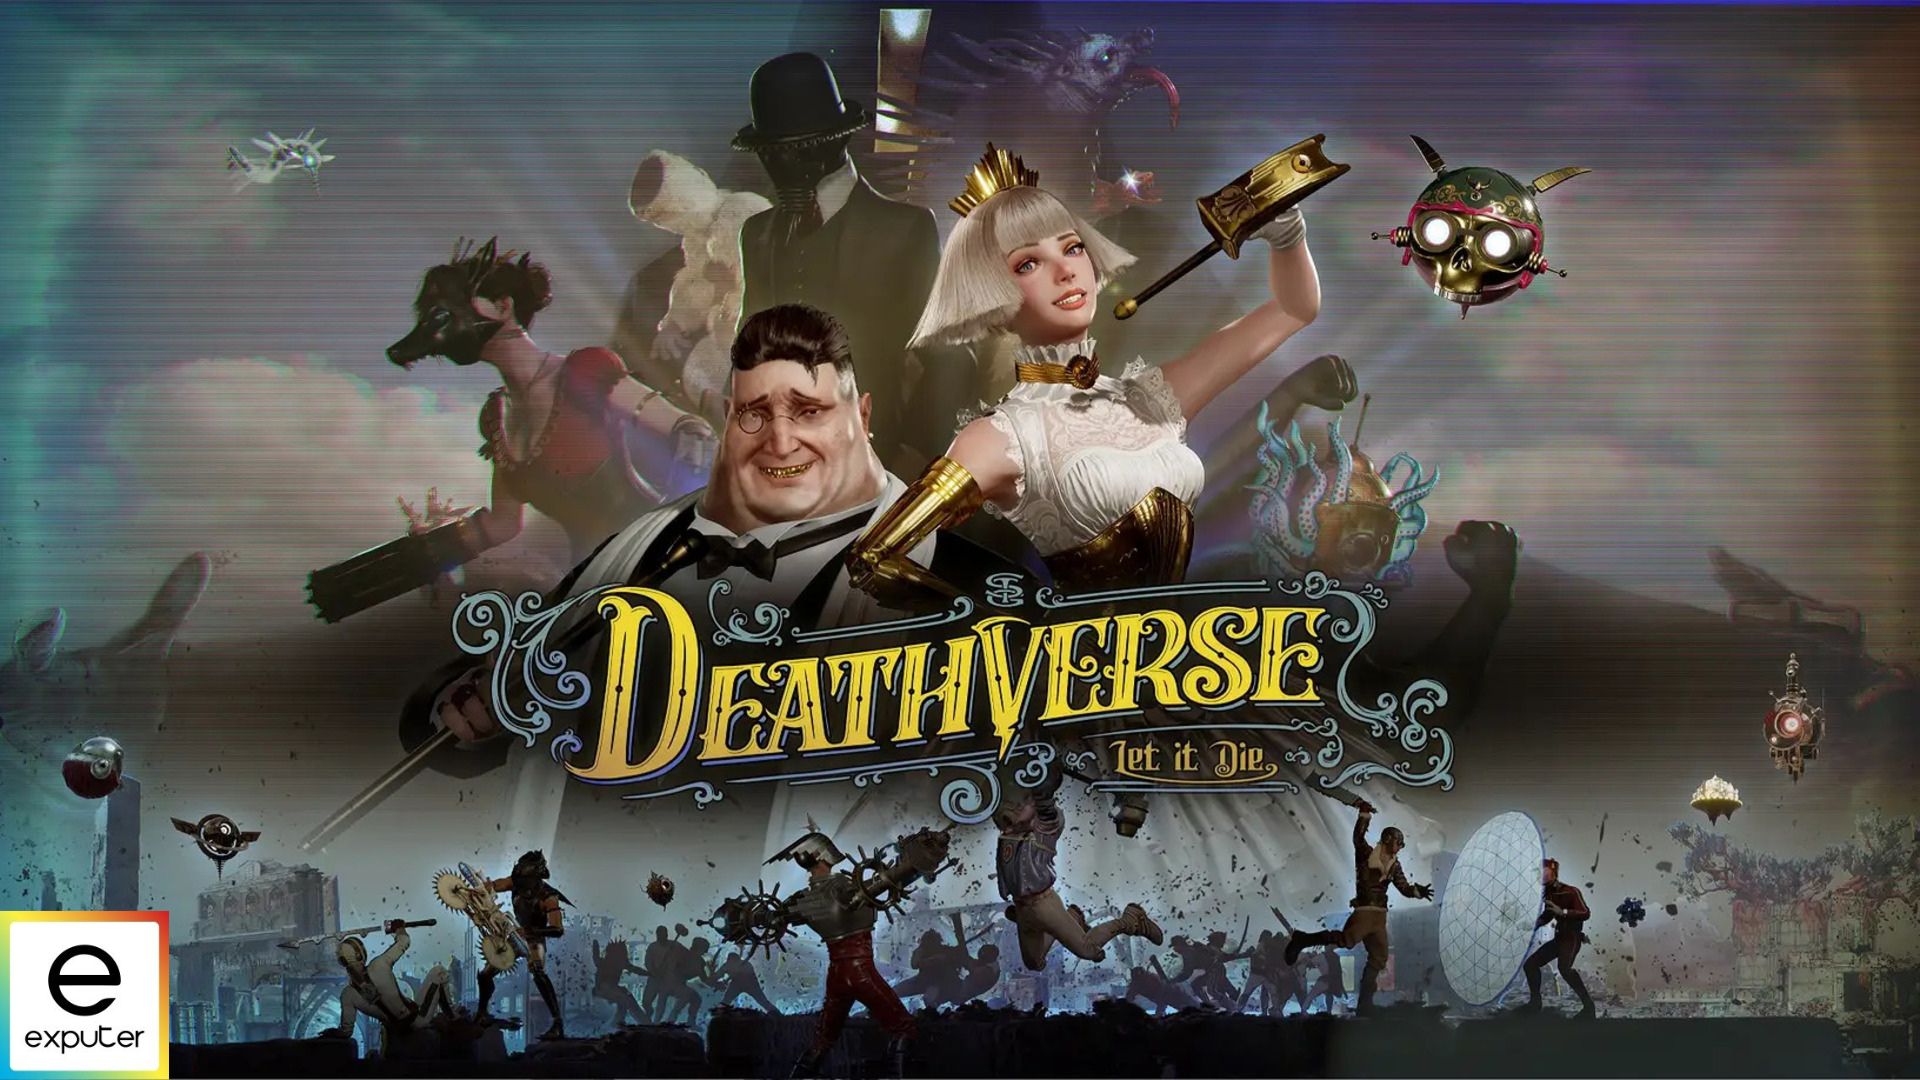 Deathverse Let it Die Review